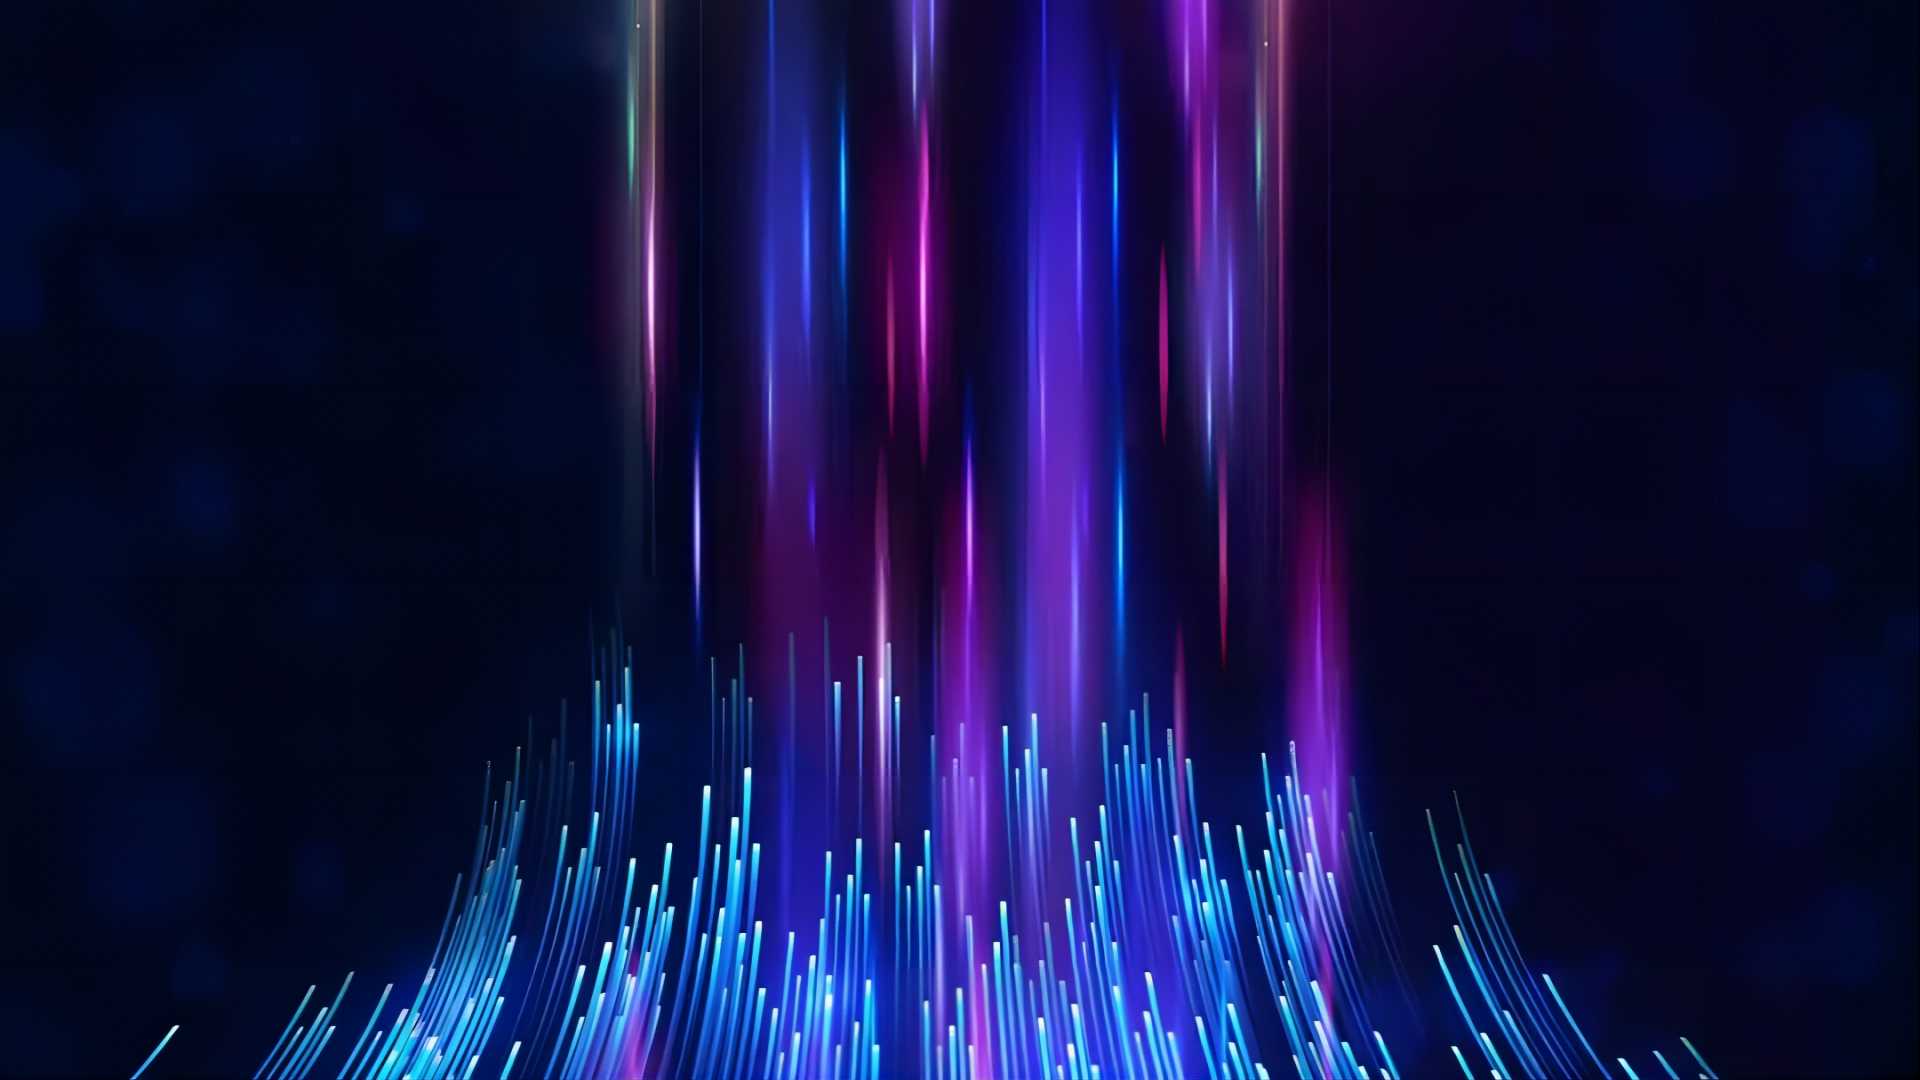 这张图片展示了一种抽象的数字艺术，彩色的光线从上方垂直下落，底部呈现出类似城市天际线的光束效果。